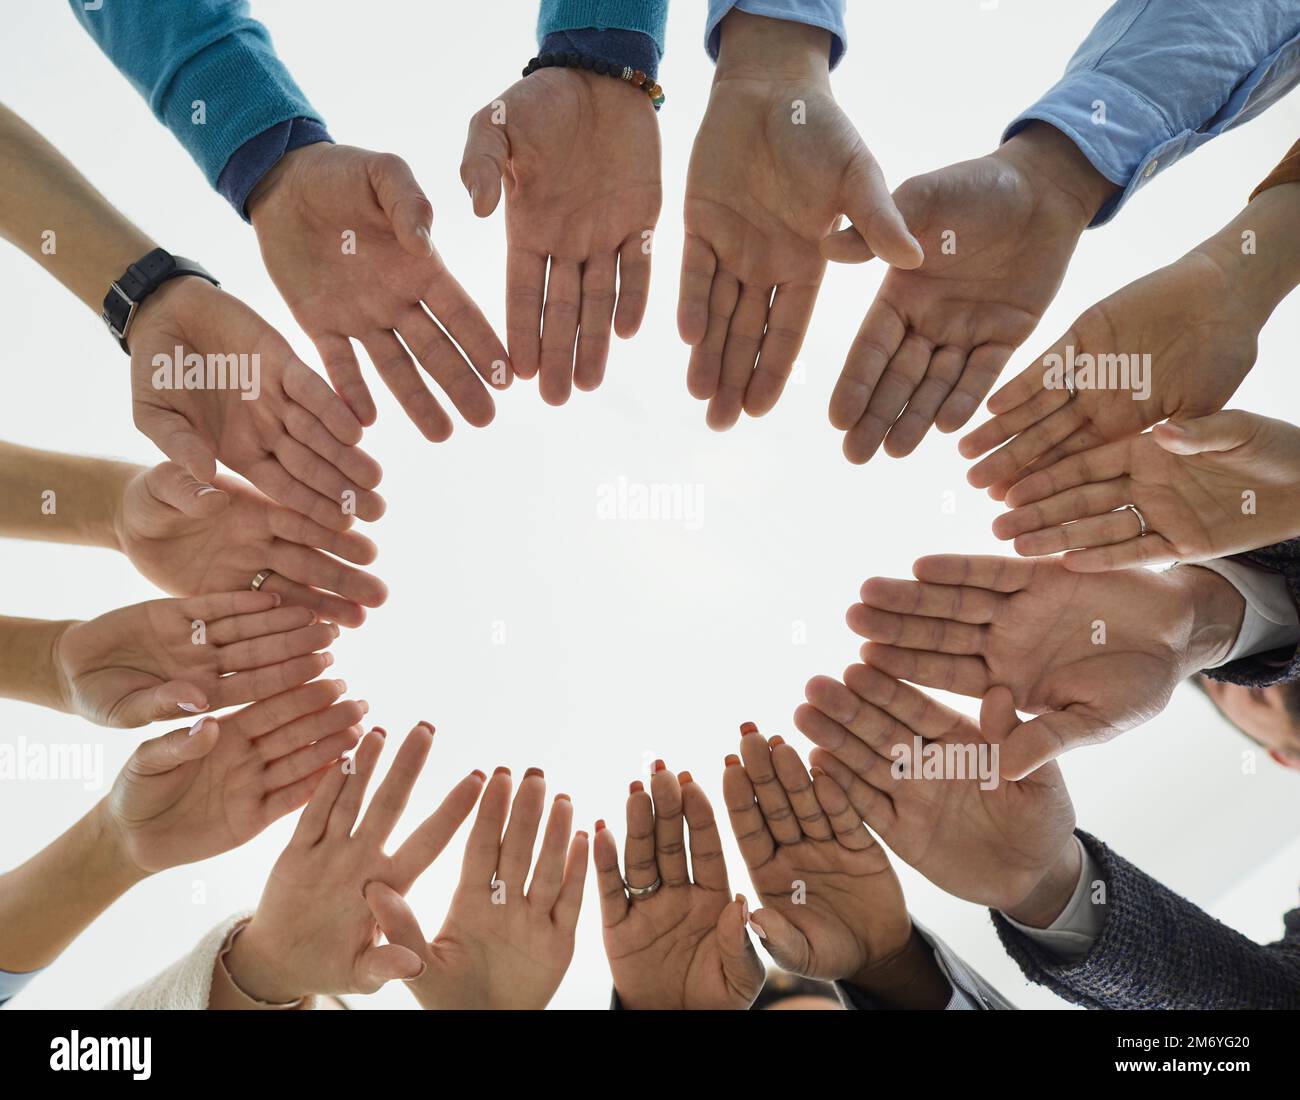 Des personnes diverses forment un cercle de mains démontrant l'égalité, l'unité et la solidarité. Banque D'Images